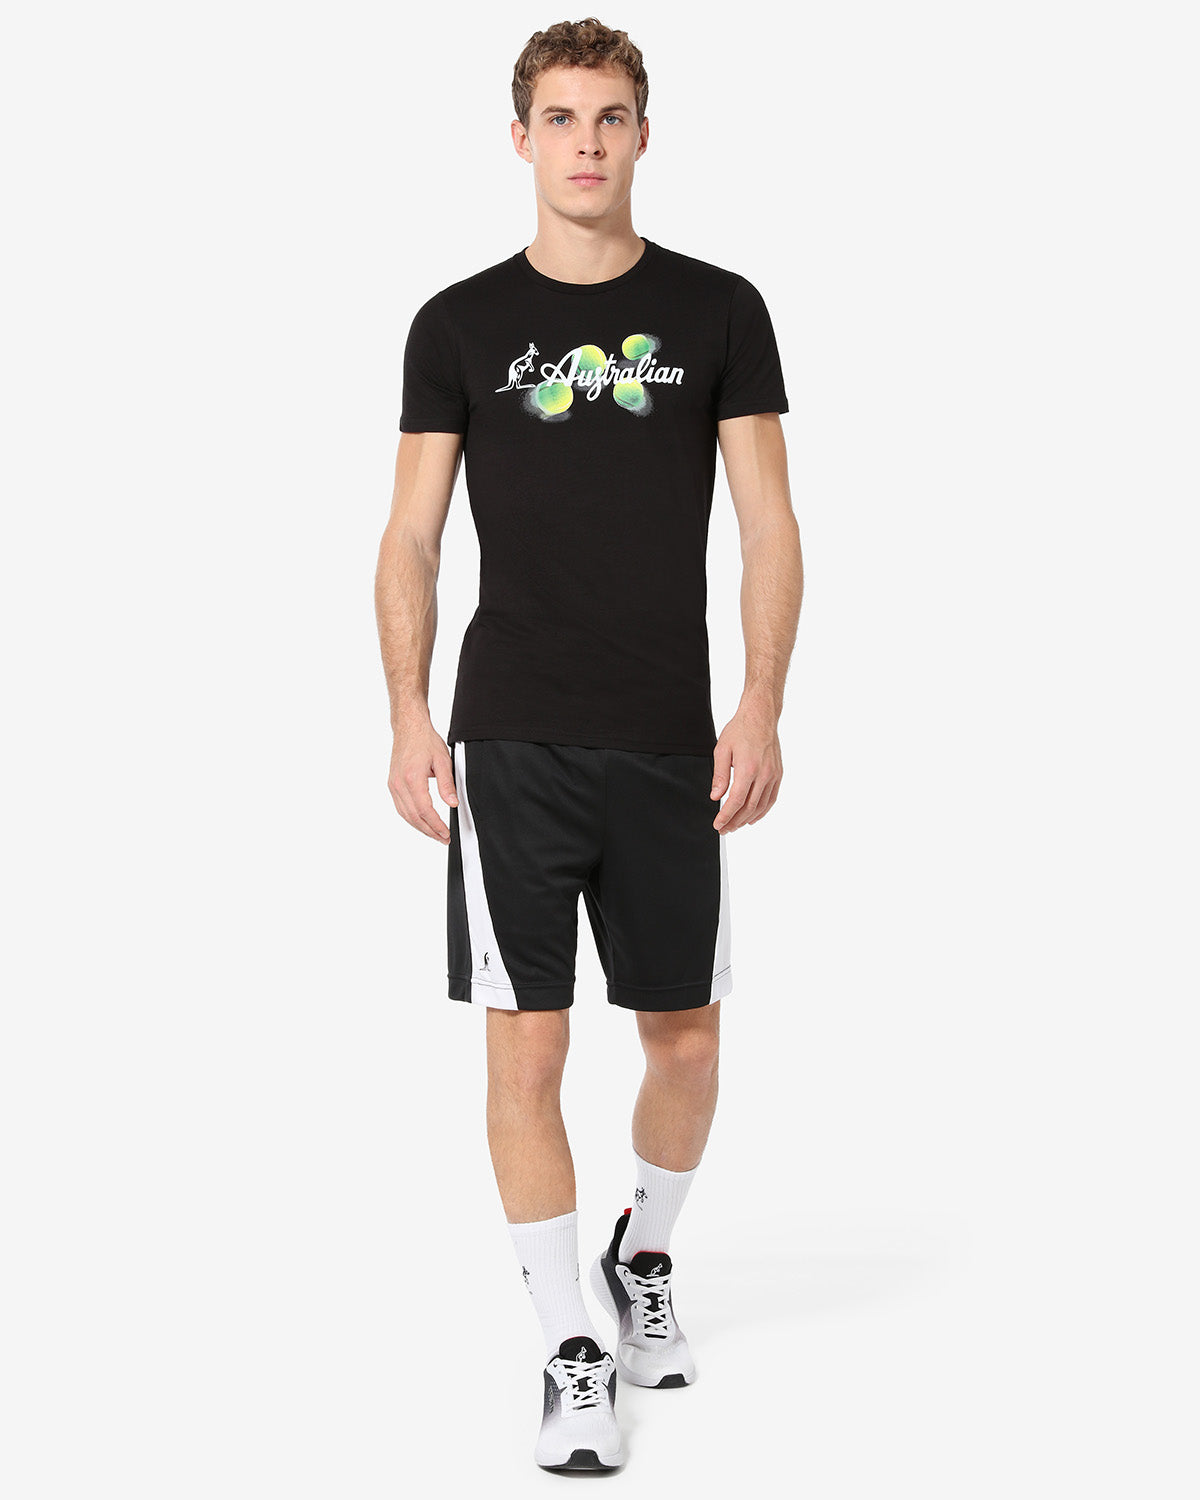 Balls T-shirt: Australian Tennis